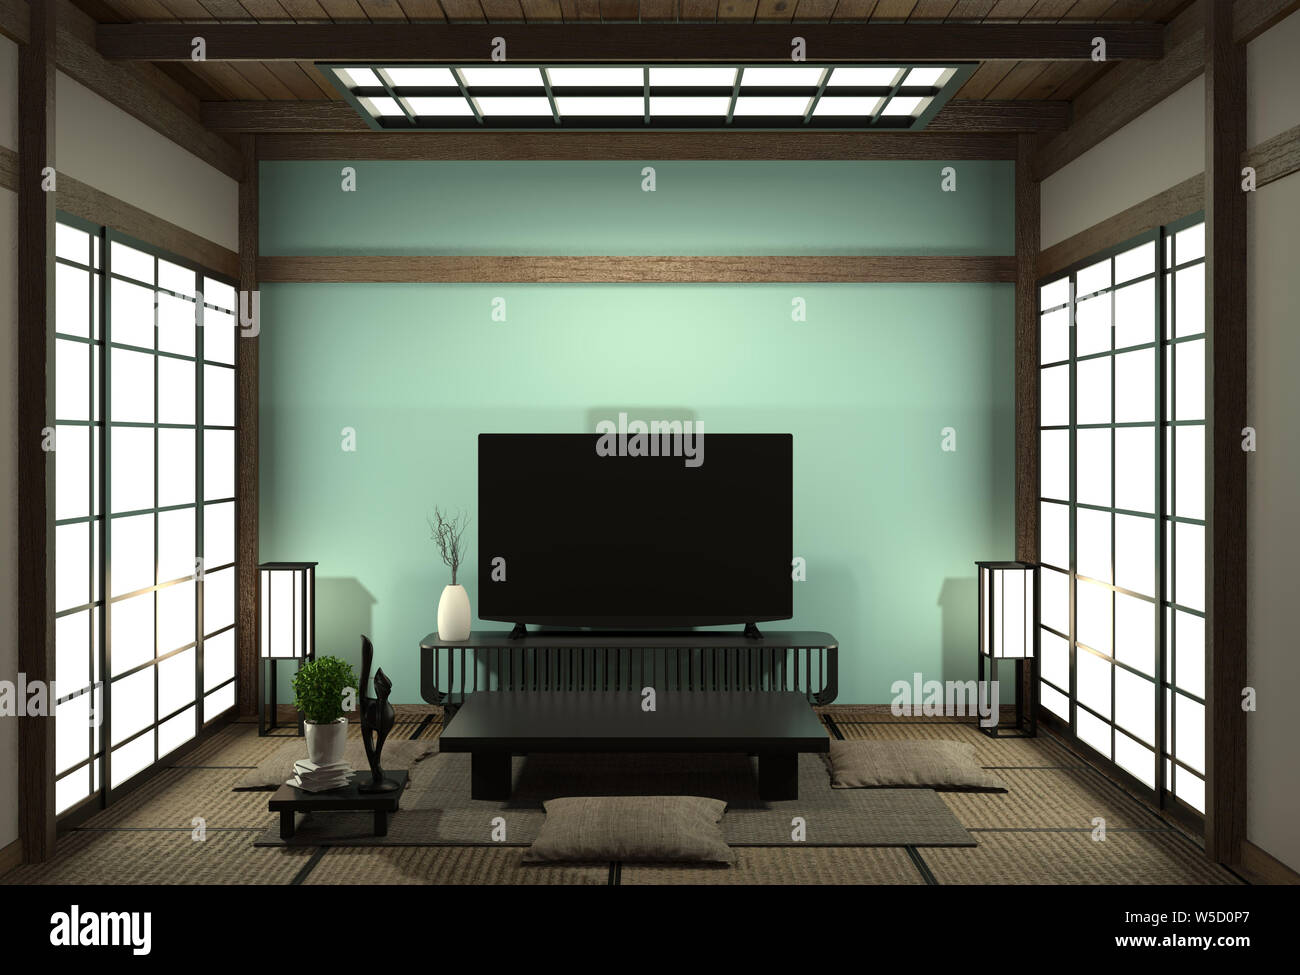 Smart TV Mockup mit leeren schwarzen Bildschirm hängen an den Schrank Einrichtung, modernen hellen Blau Wohnzimmer im japanischen Stil. 3D-Rendering Stockfoto